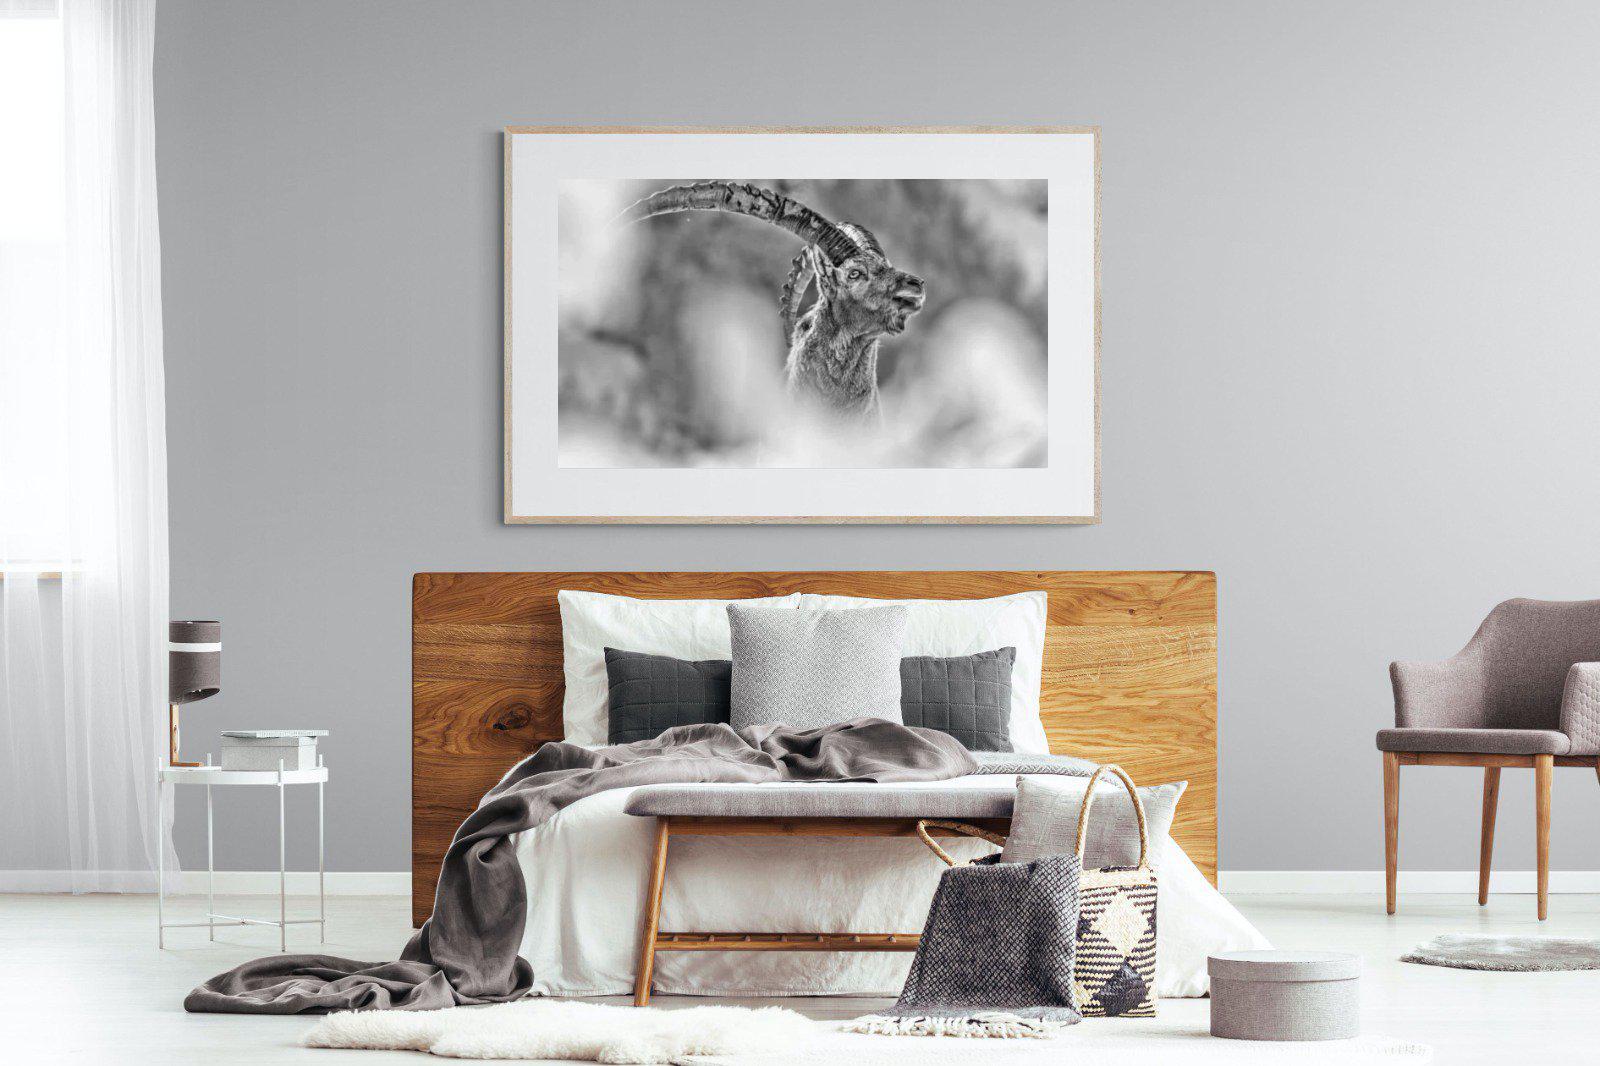 Ibex-Wall_Art-150 x 100cm-Framed Print-Wood-Pixalot